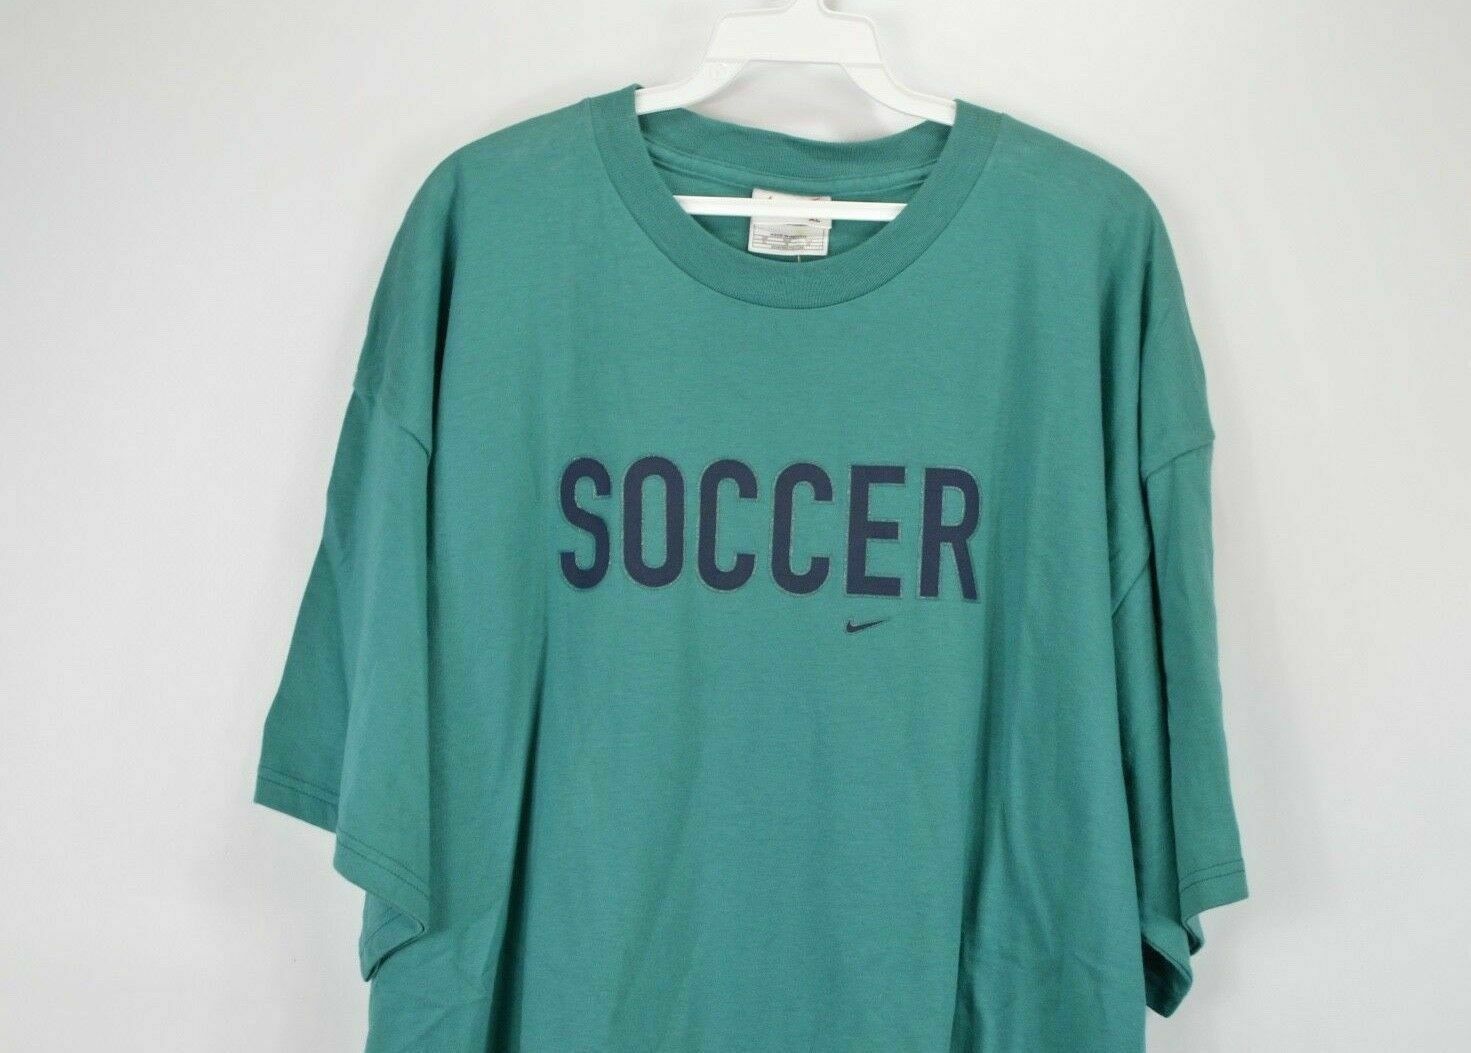 Nike NOS Vintage 90s Nike Soccer Travis Scott Mini Swoosh Shirt Size US XL / EU 56 / 4 - 3 Thumbnail